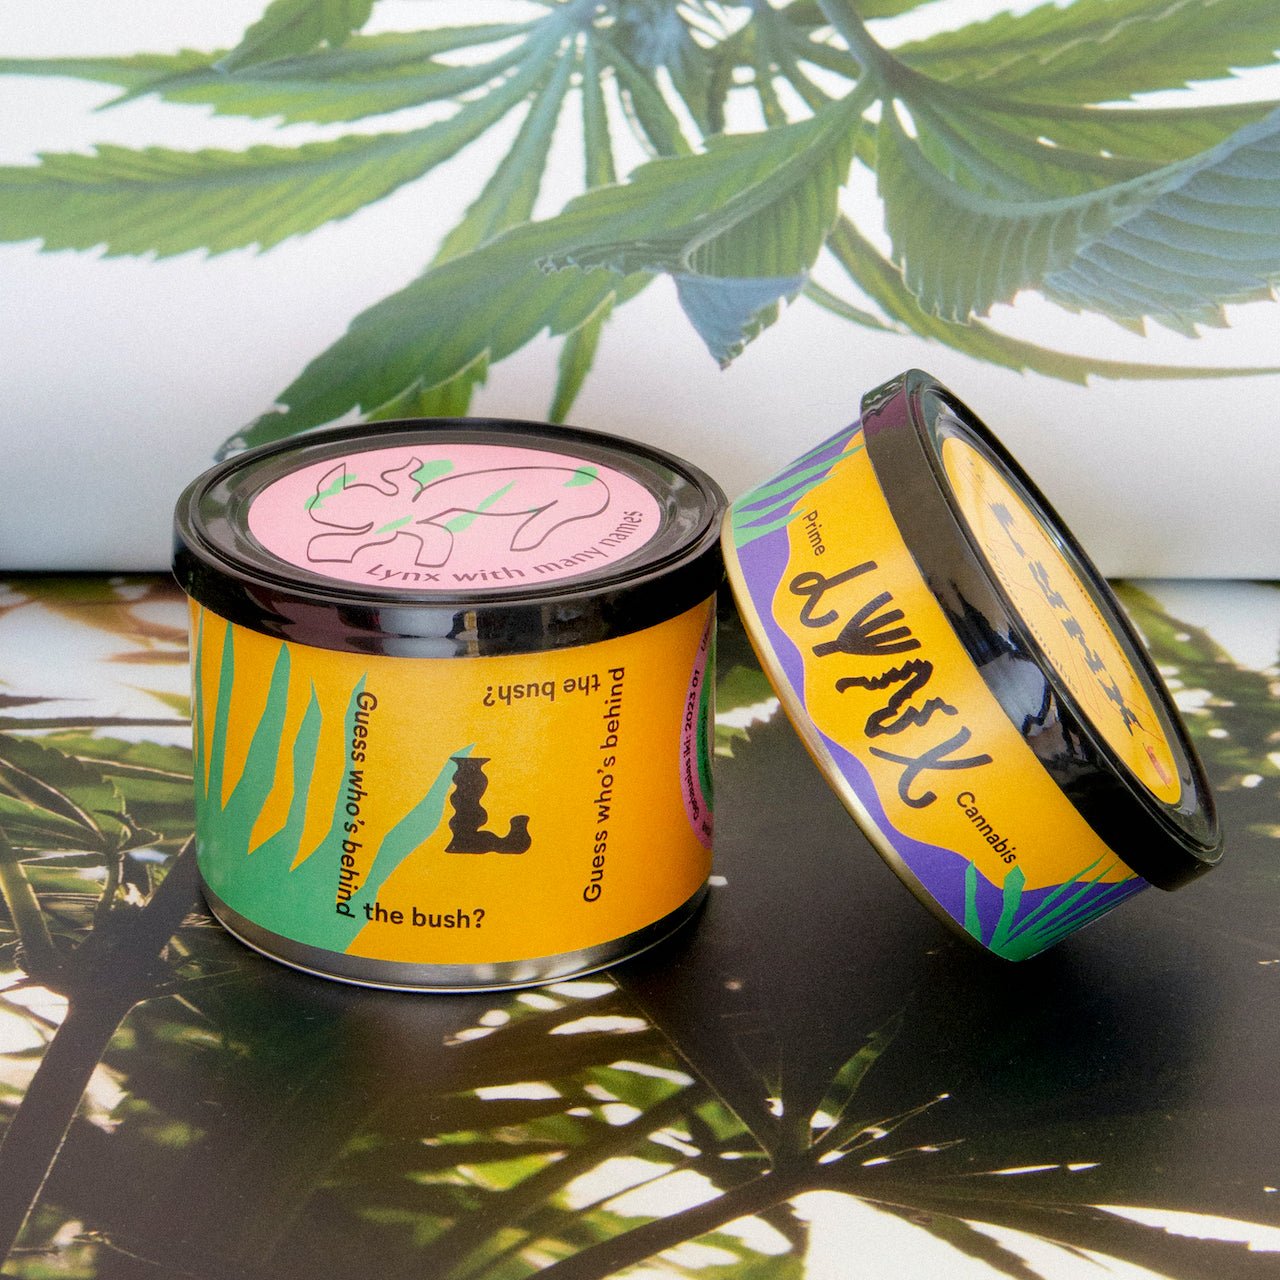 Kanapių žiedų ir arbatos rinkinys - Lynx Tea + Lynx Prime - Lynx Cannabis